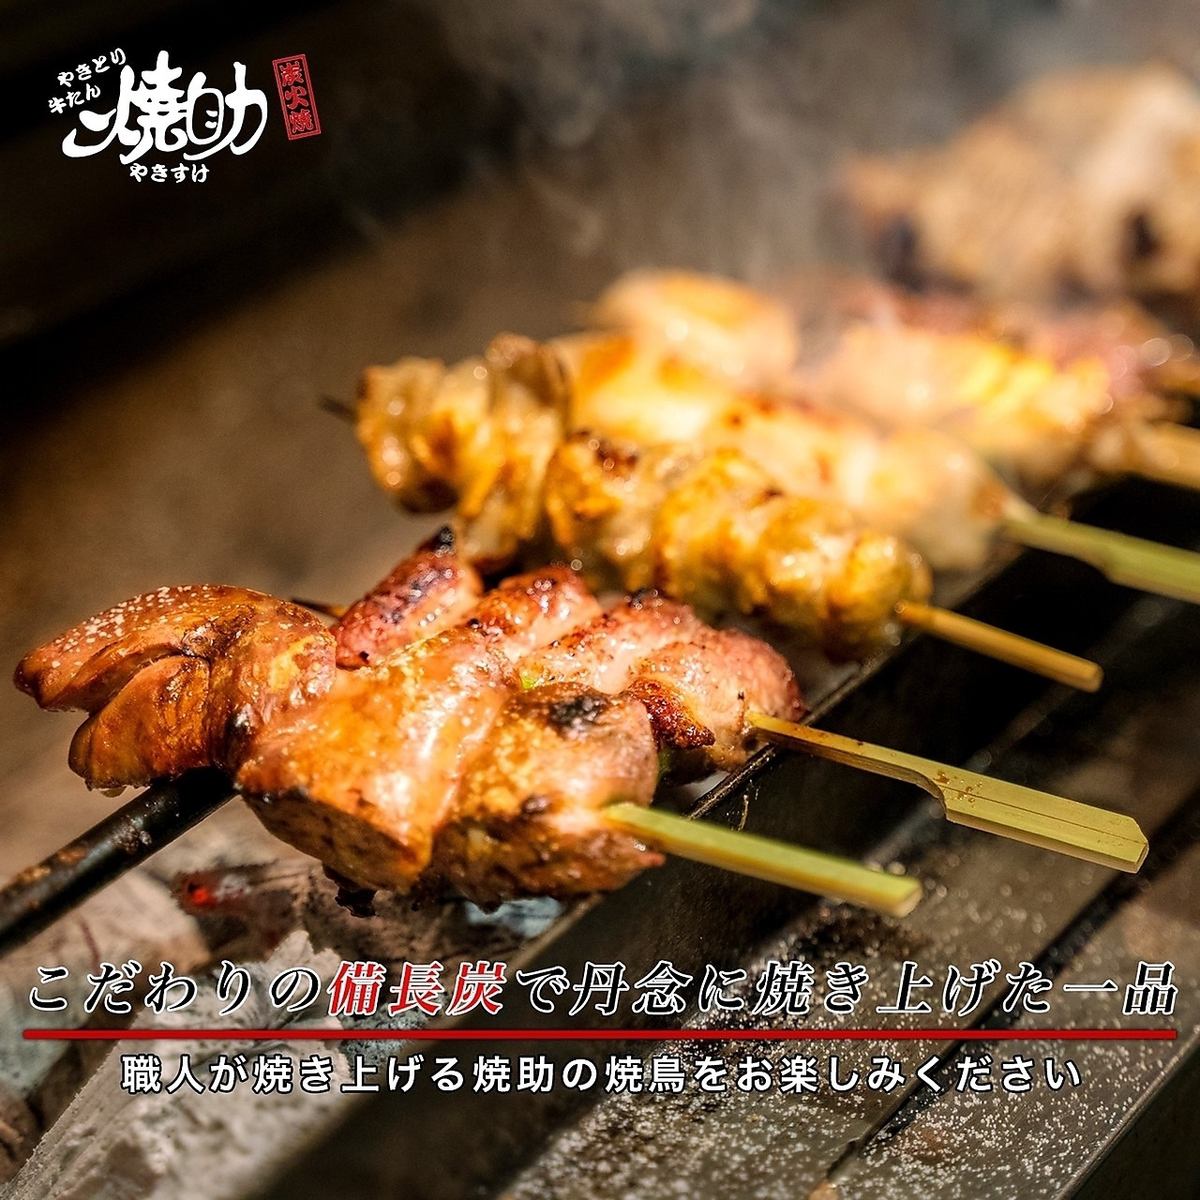 烤雞肉串和牛舌非常棒；提供帶horigotatsu（下沉式被爐桌）和私人餐桌的私人房間；允許吸煙！